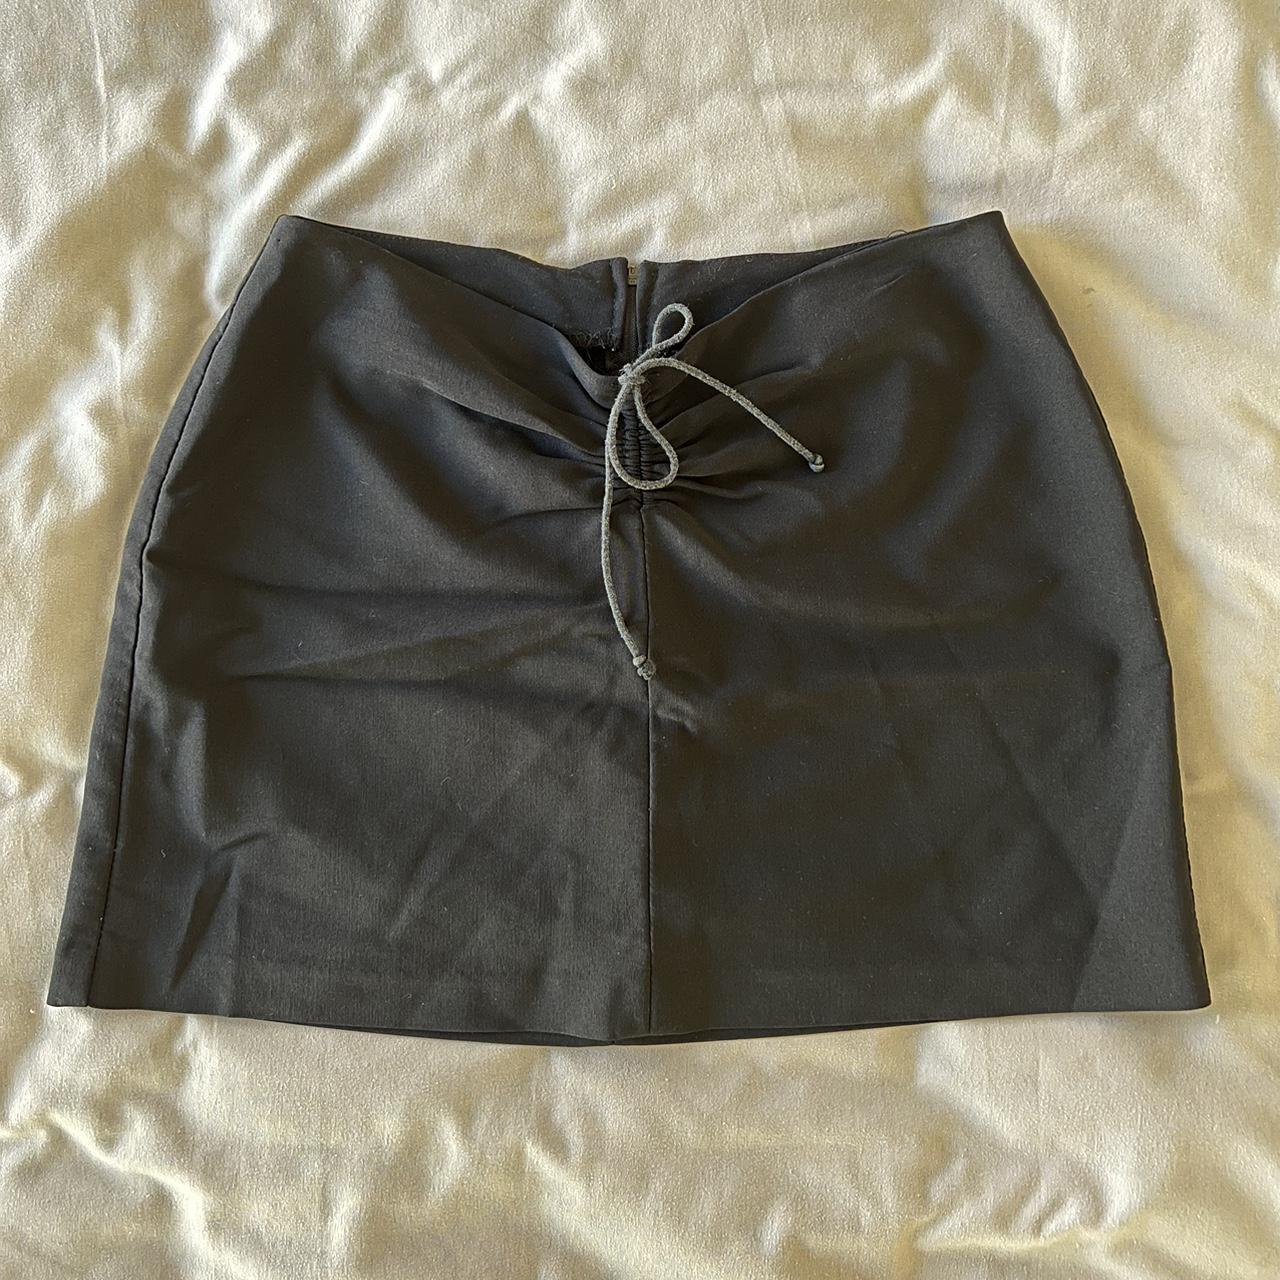 Vintage Charlotte Russe 90’s / y2k mini skirt. Super... - Depop